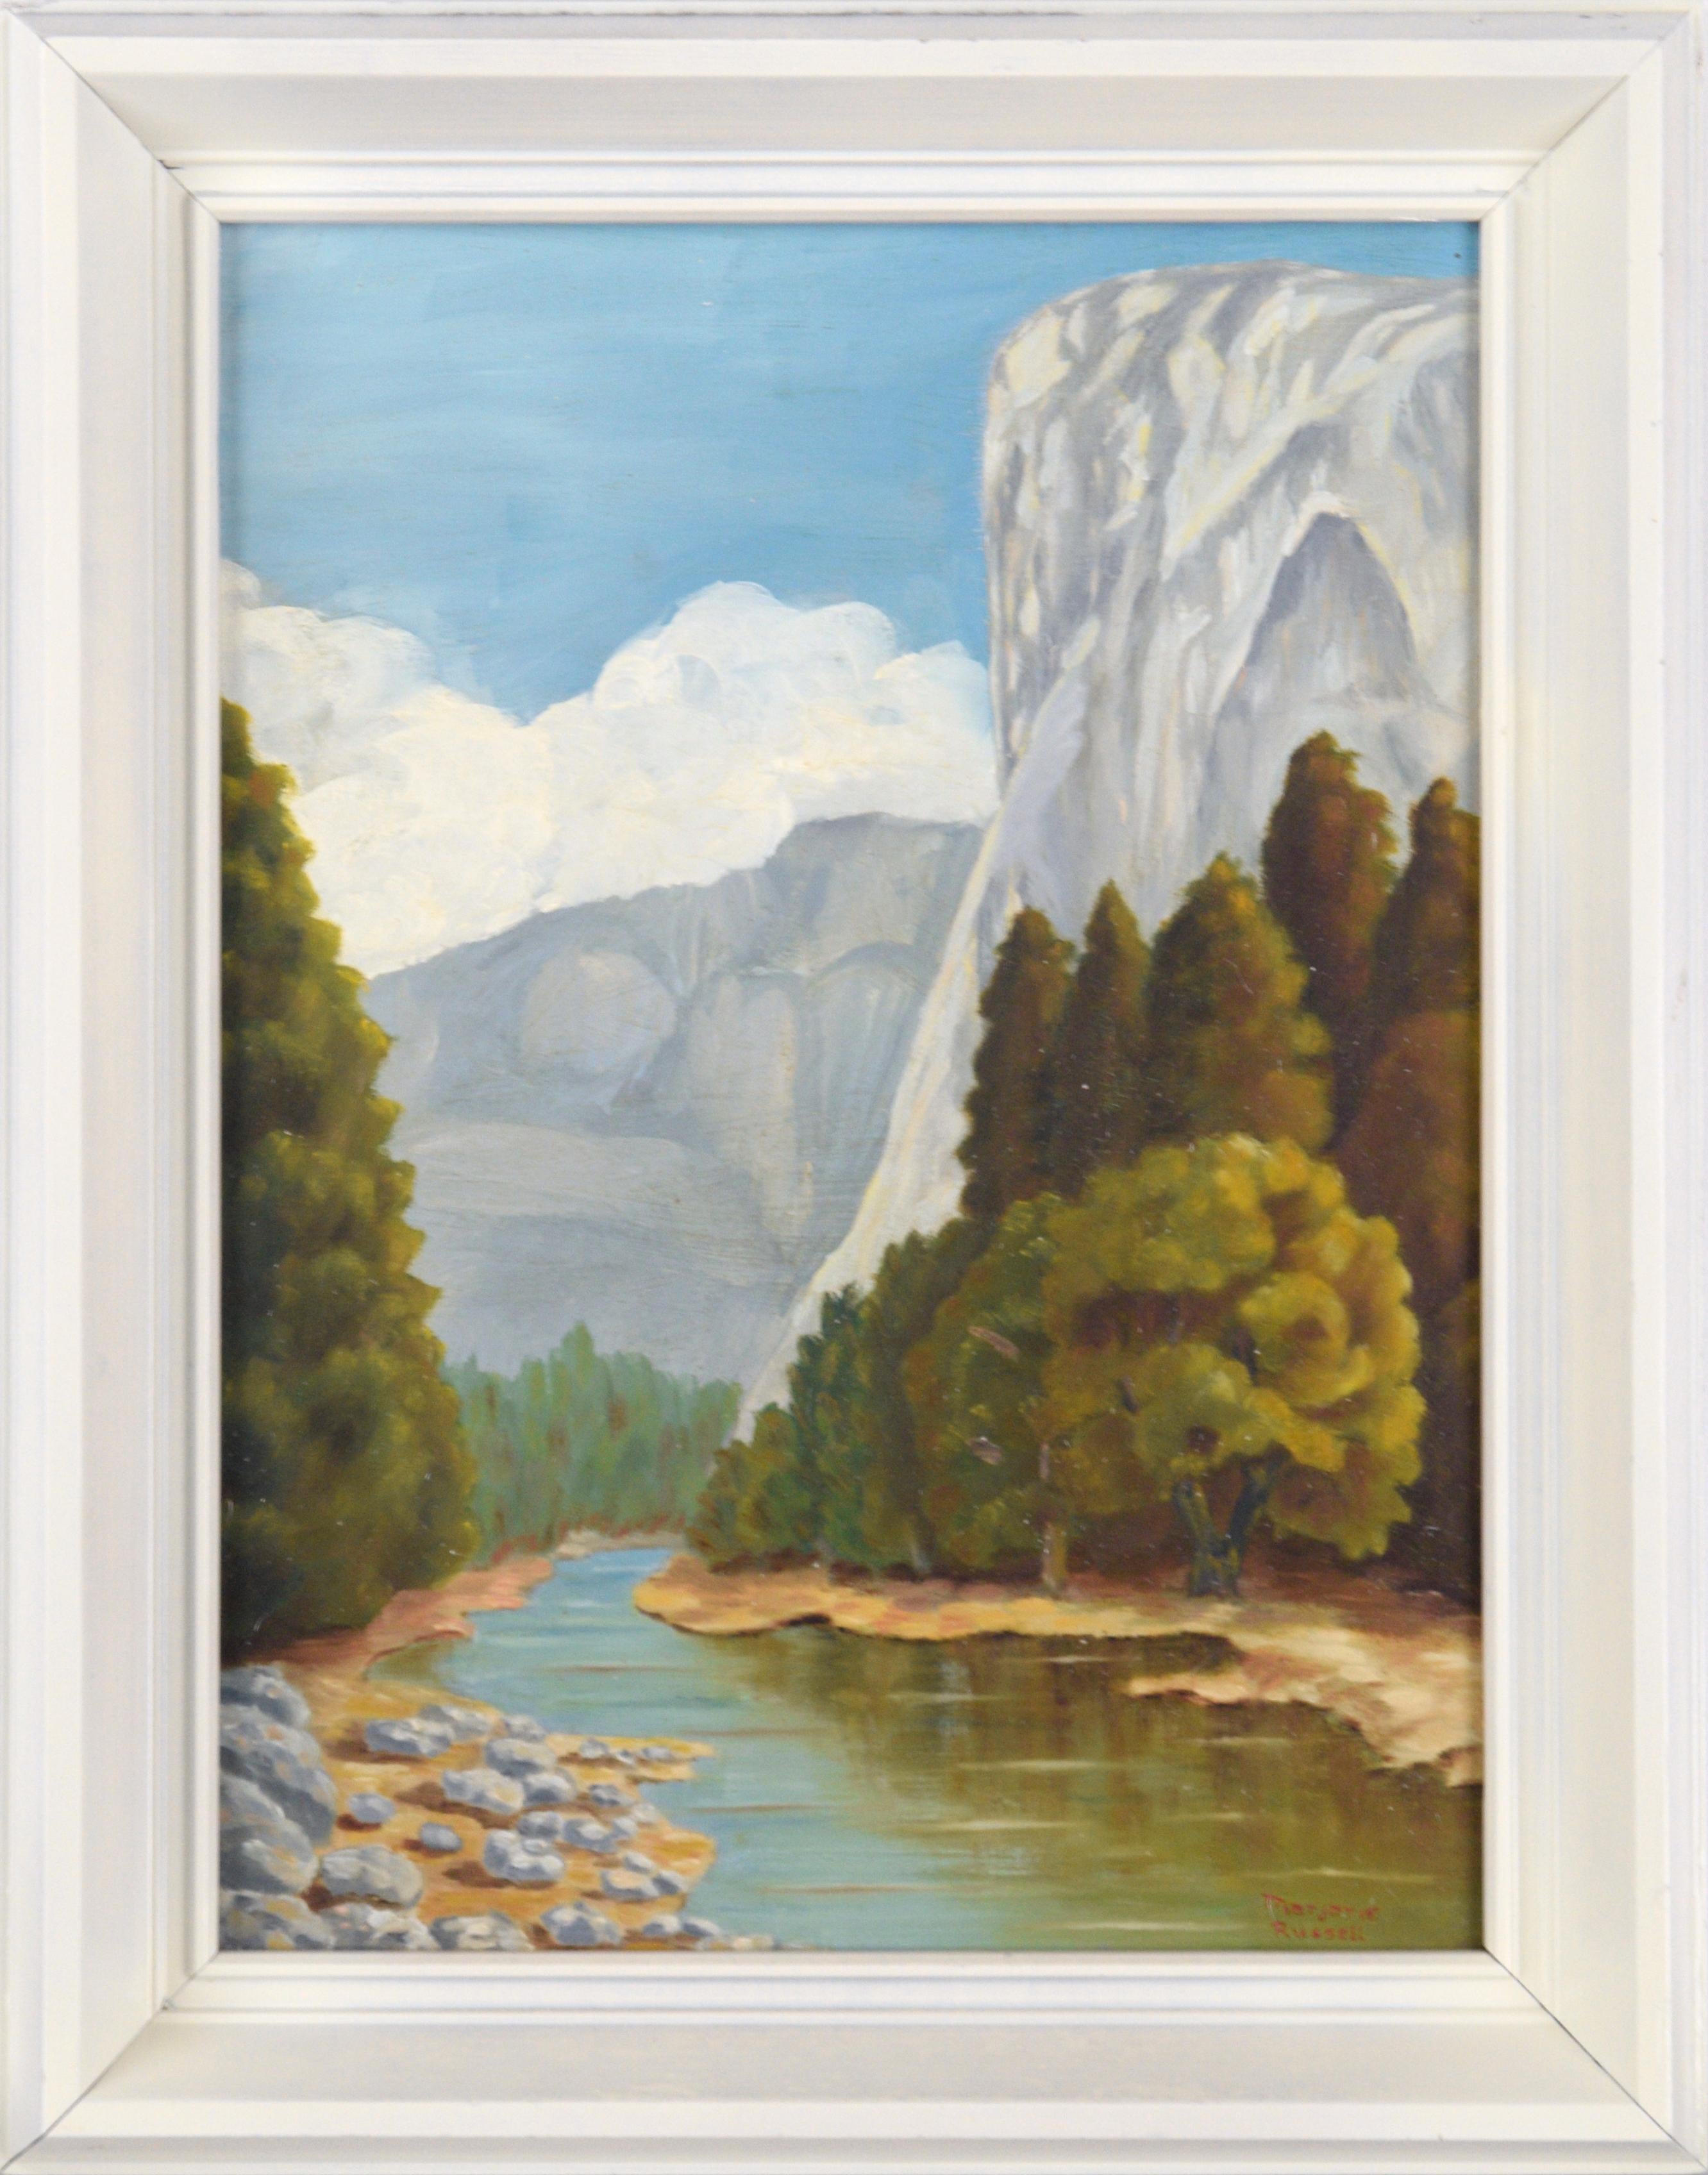 El Capitan und der Merced River - Yosemite - Vertikale Landschaft aus der Mitte des Jahrhunderts